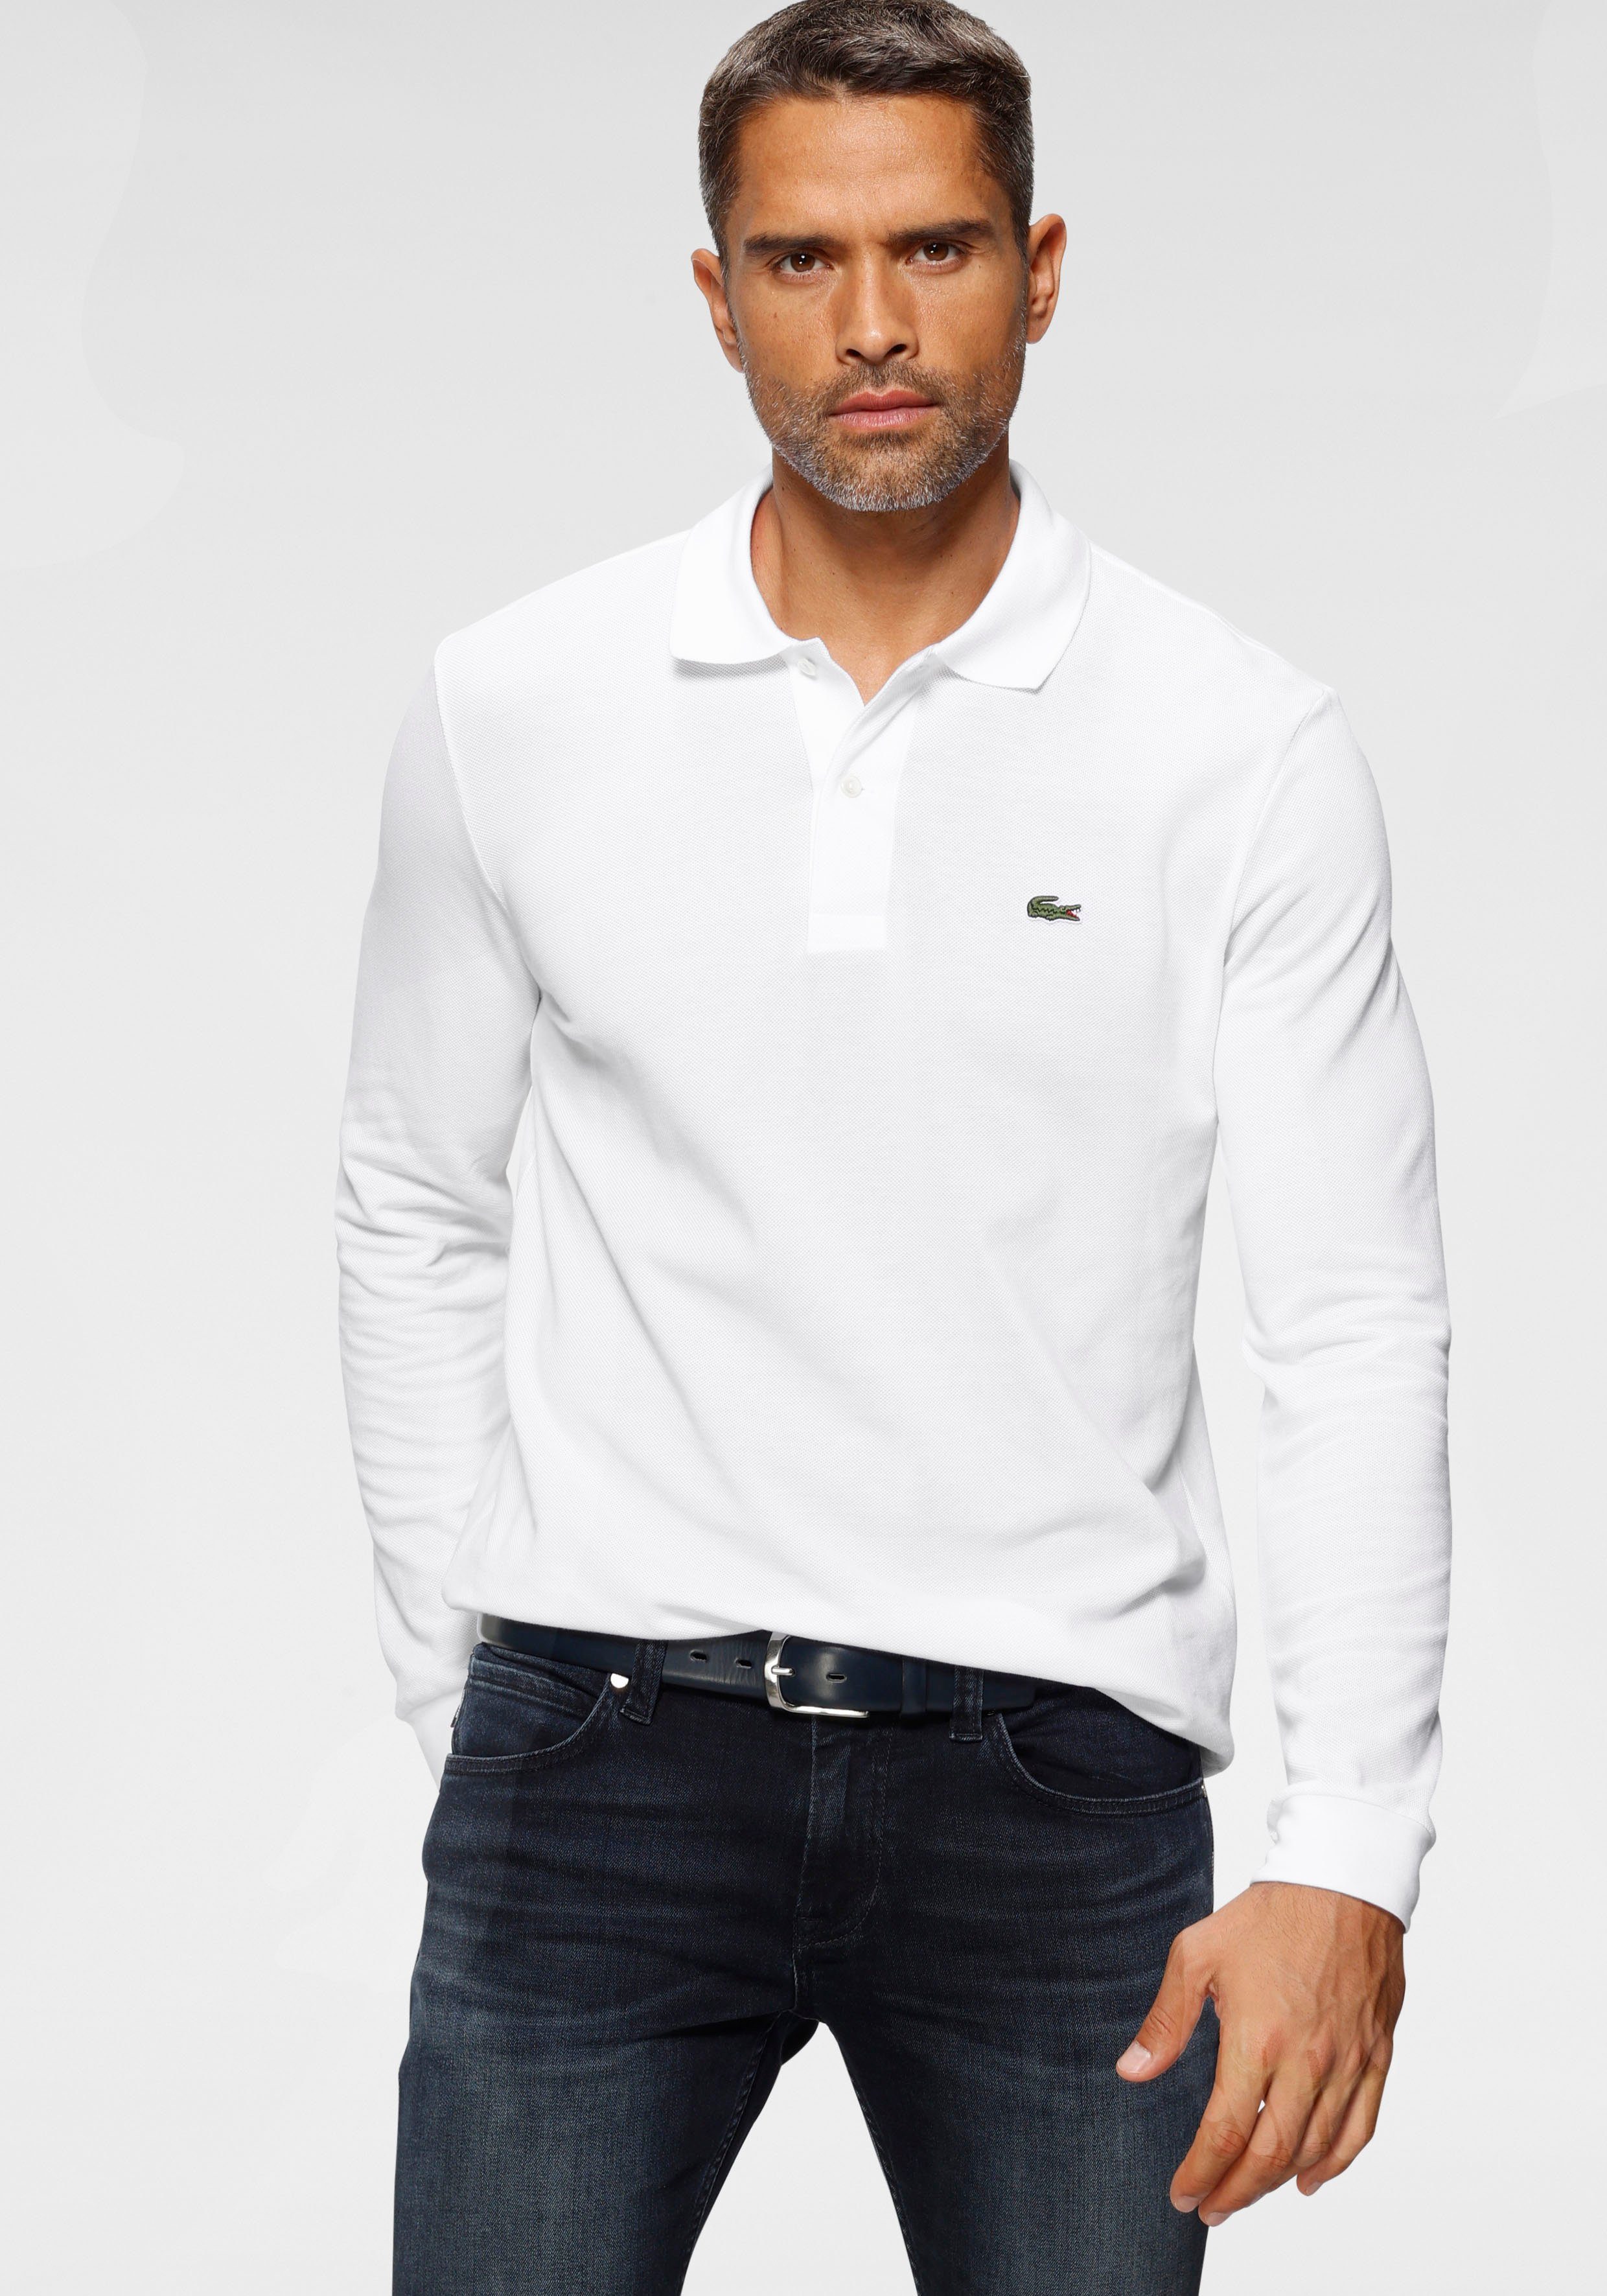 Lacoste Langarm-Poloshirt Basic Style online kaufen | OTTO